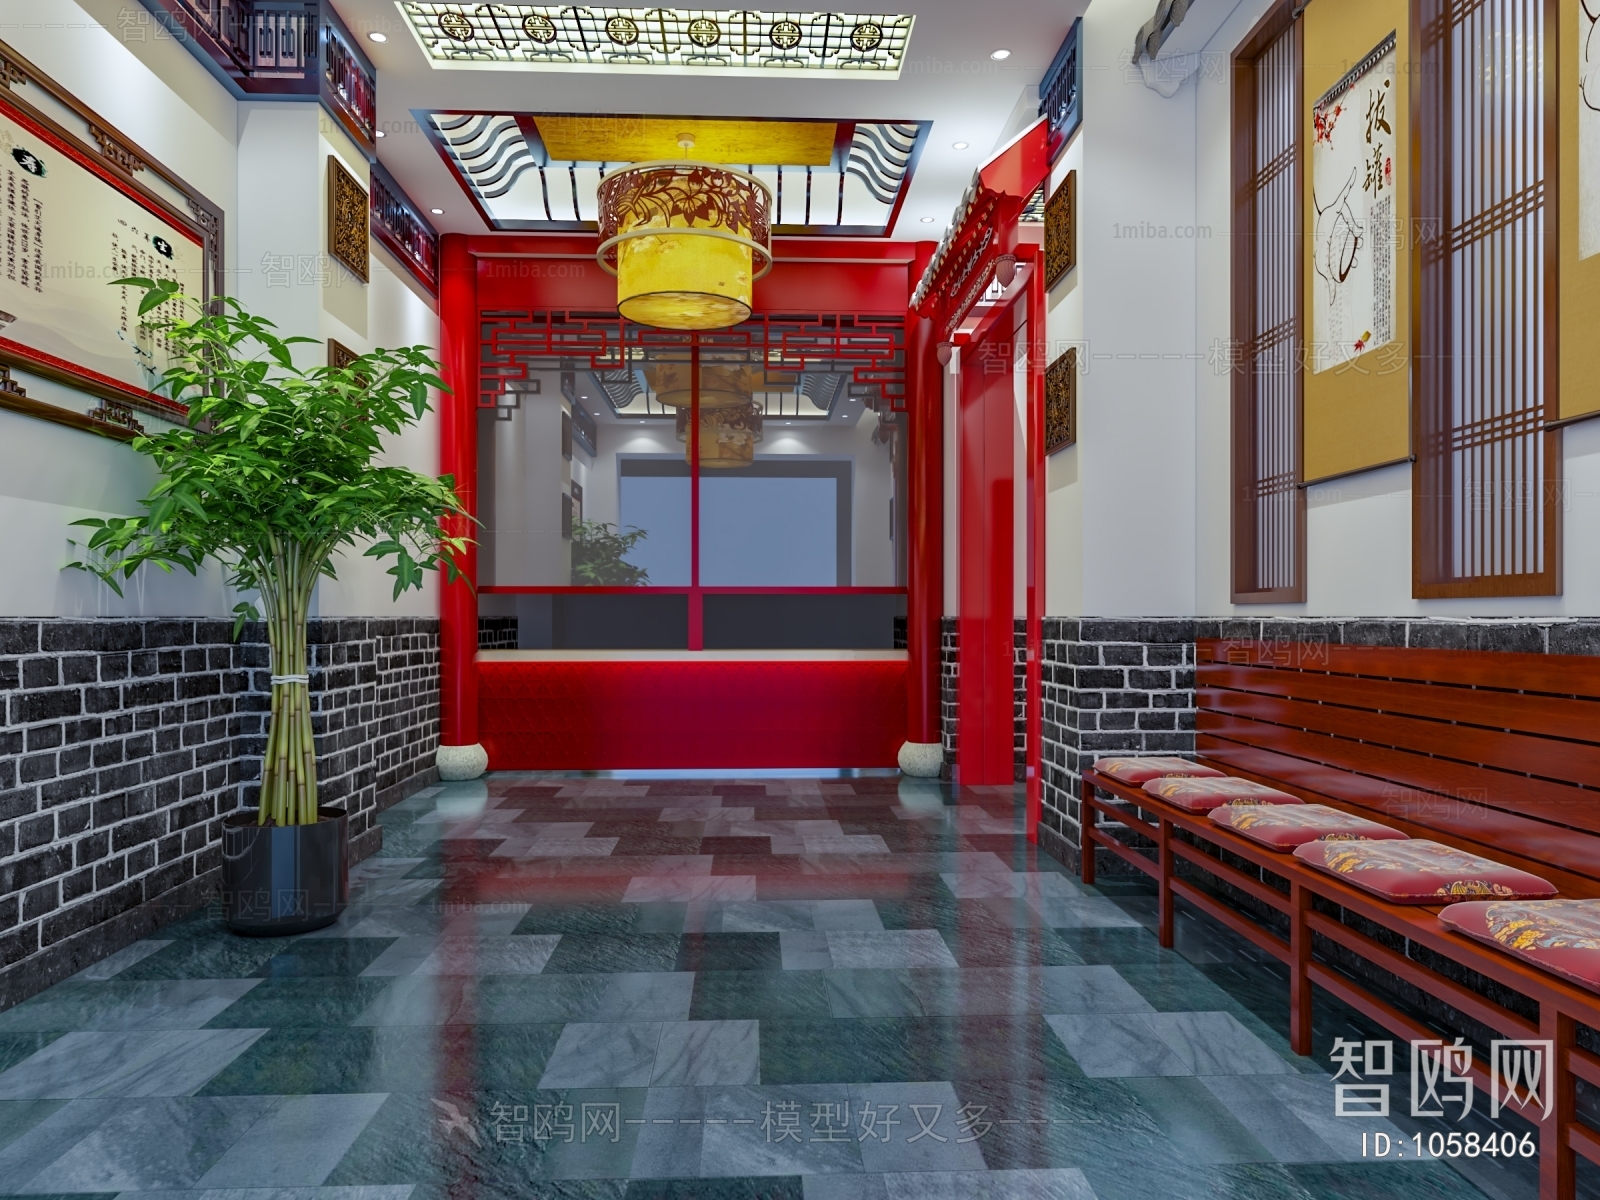 Chinese Style Hospital